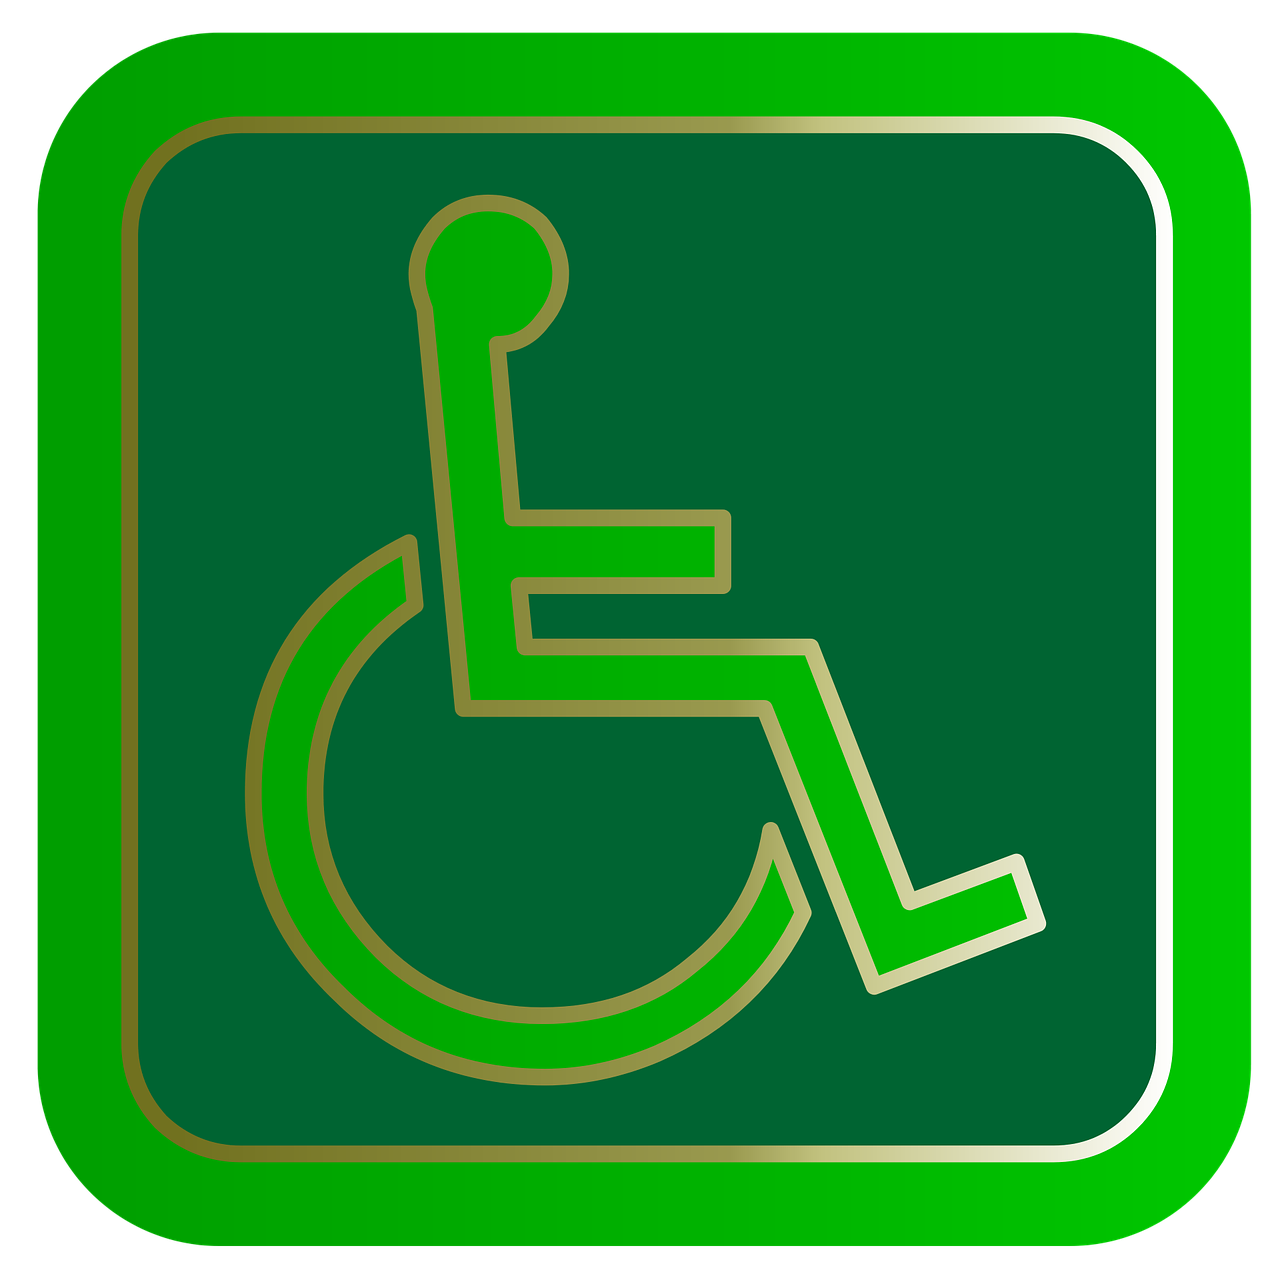 Centrum META instelling gehandicaptenzorg verstandelijk gehandicapten beoordeling